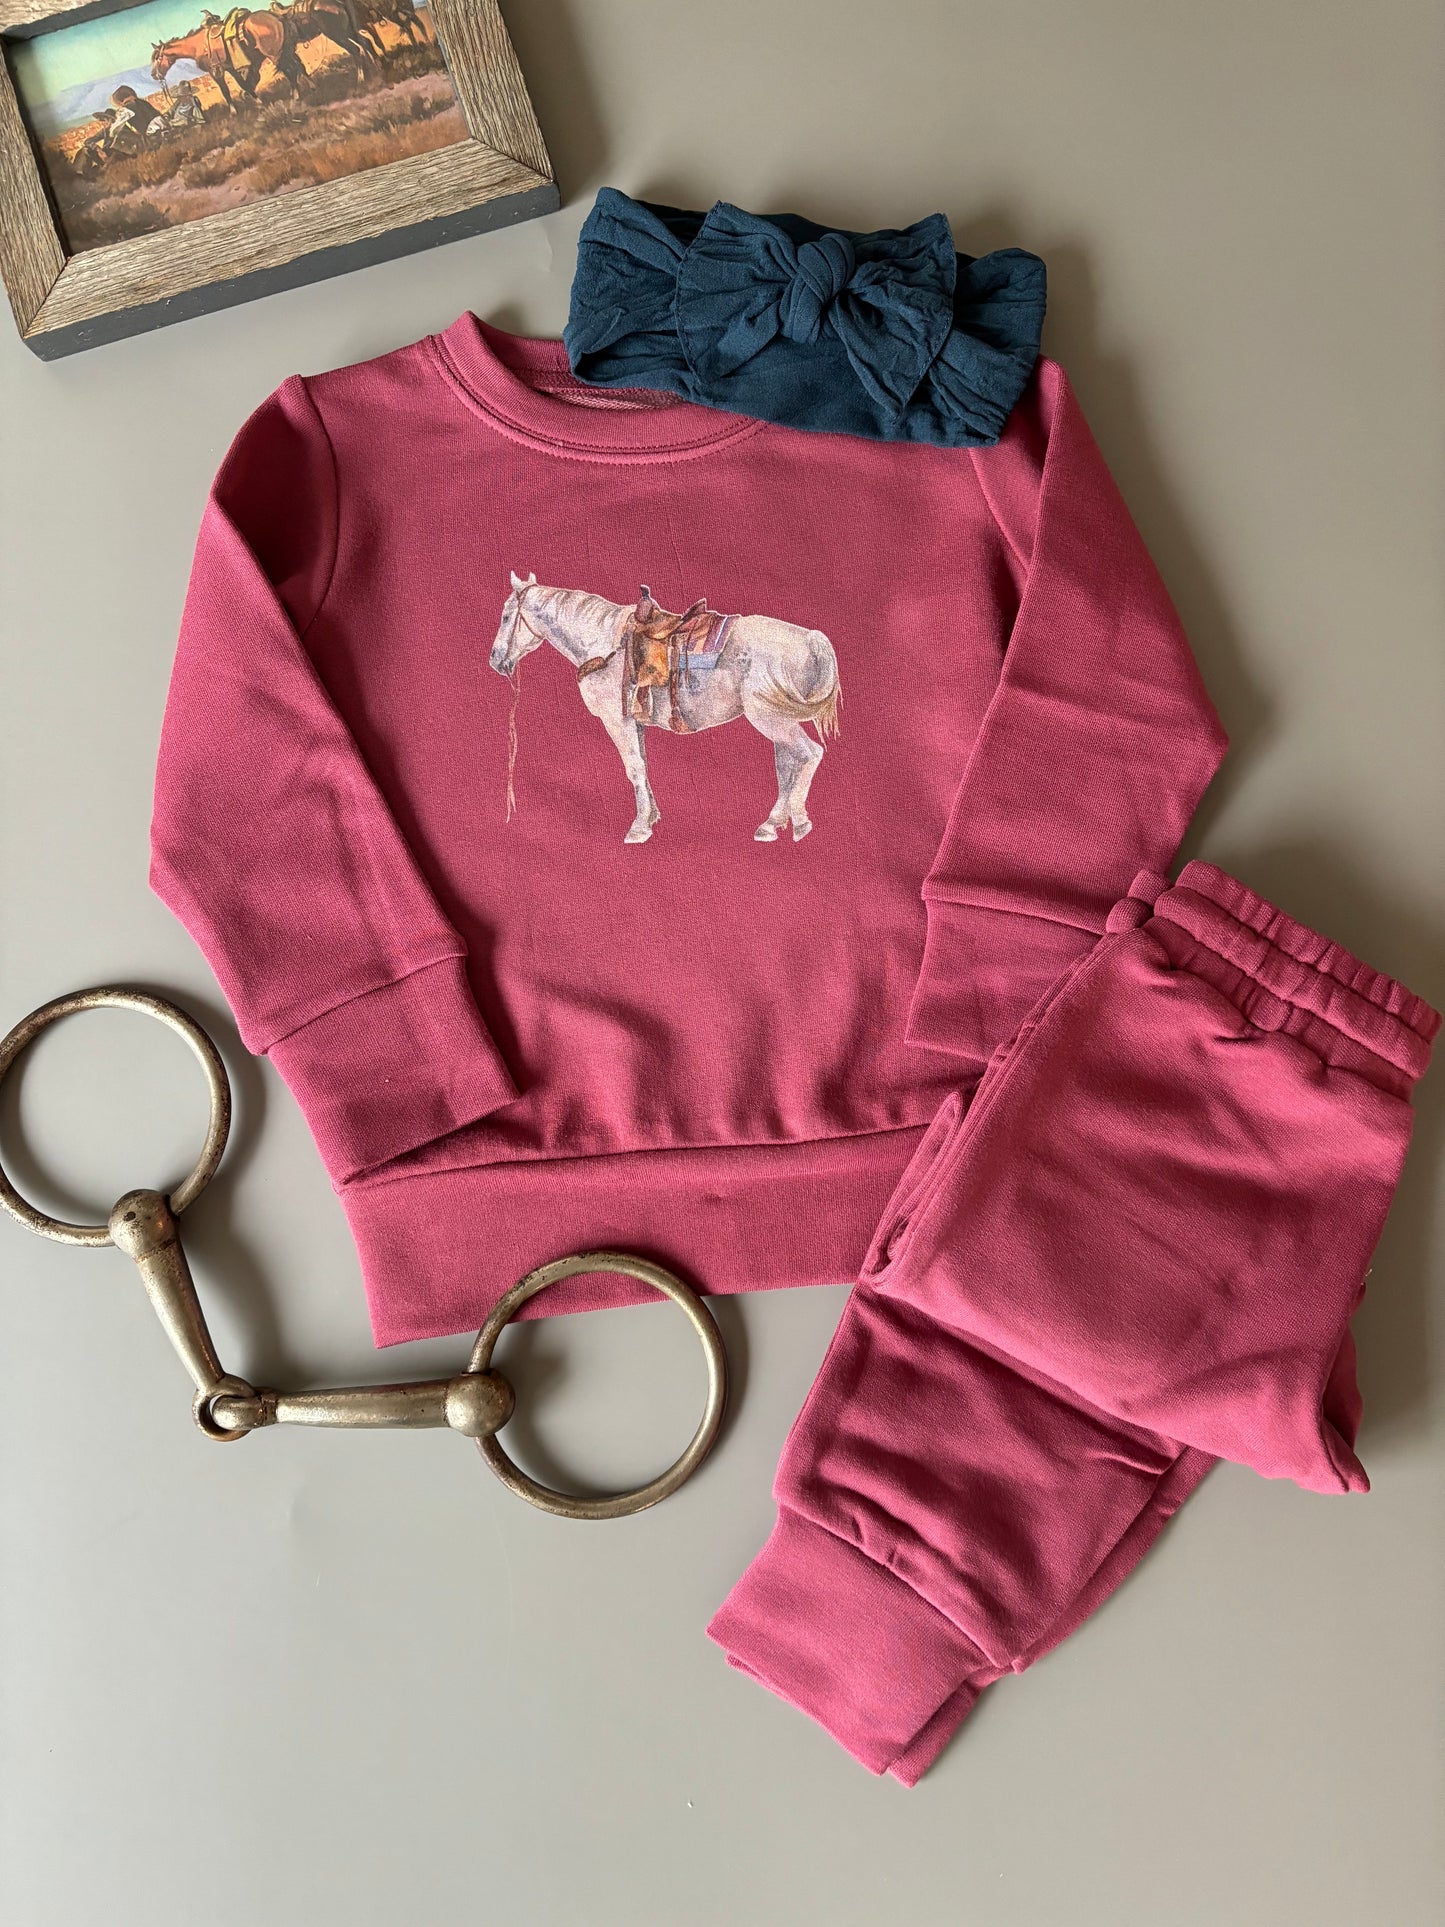 Saddled Horse Jogger Set - Magenta (Baby, Toddler & Youth)